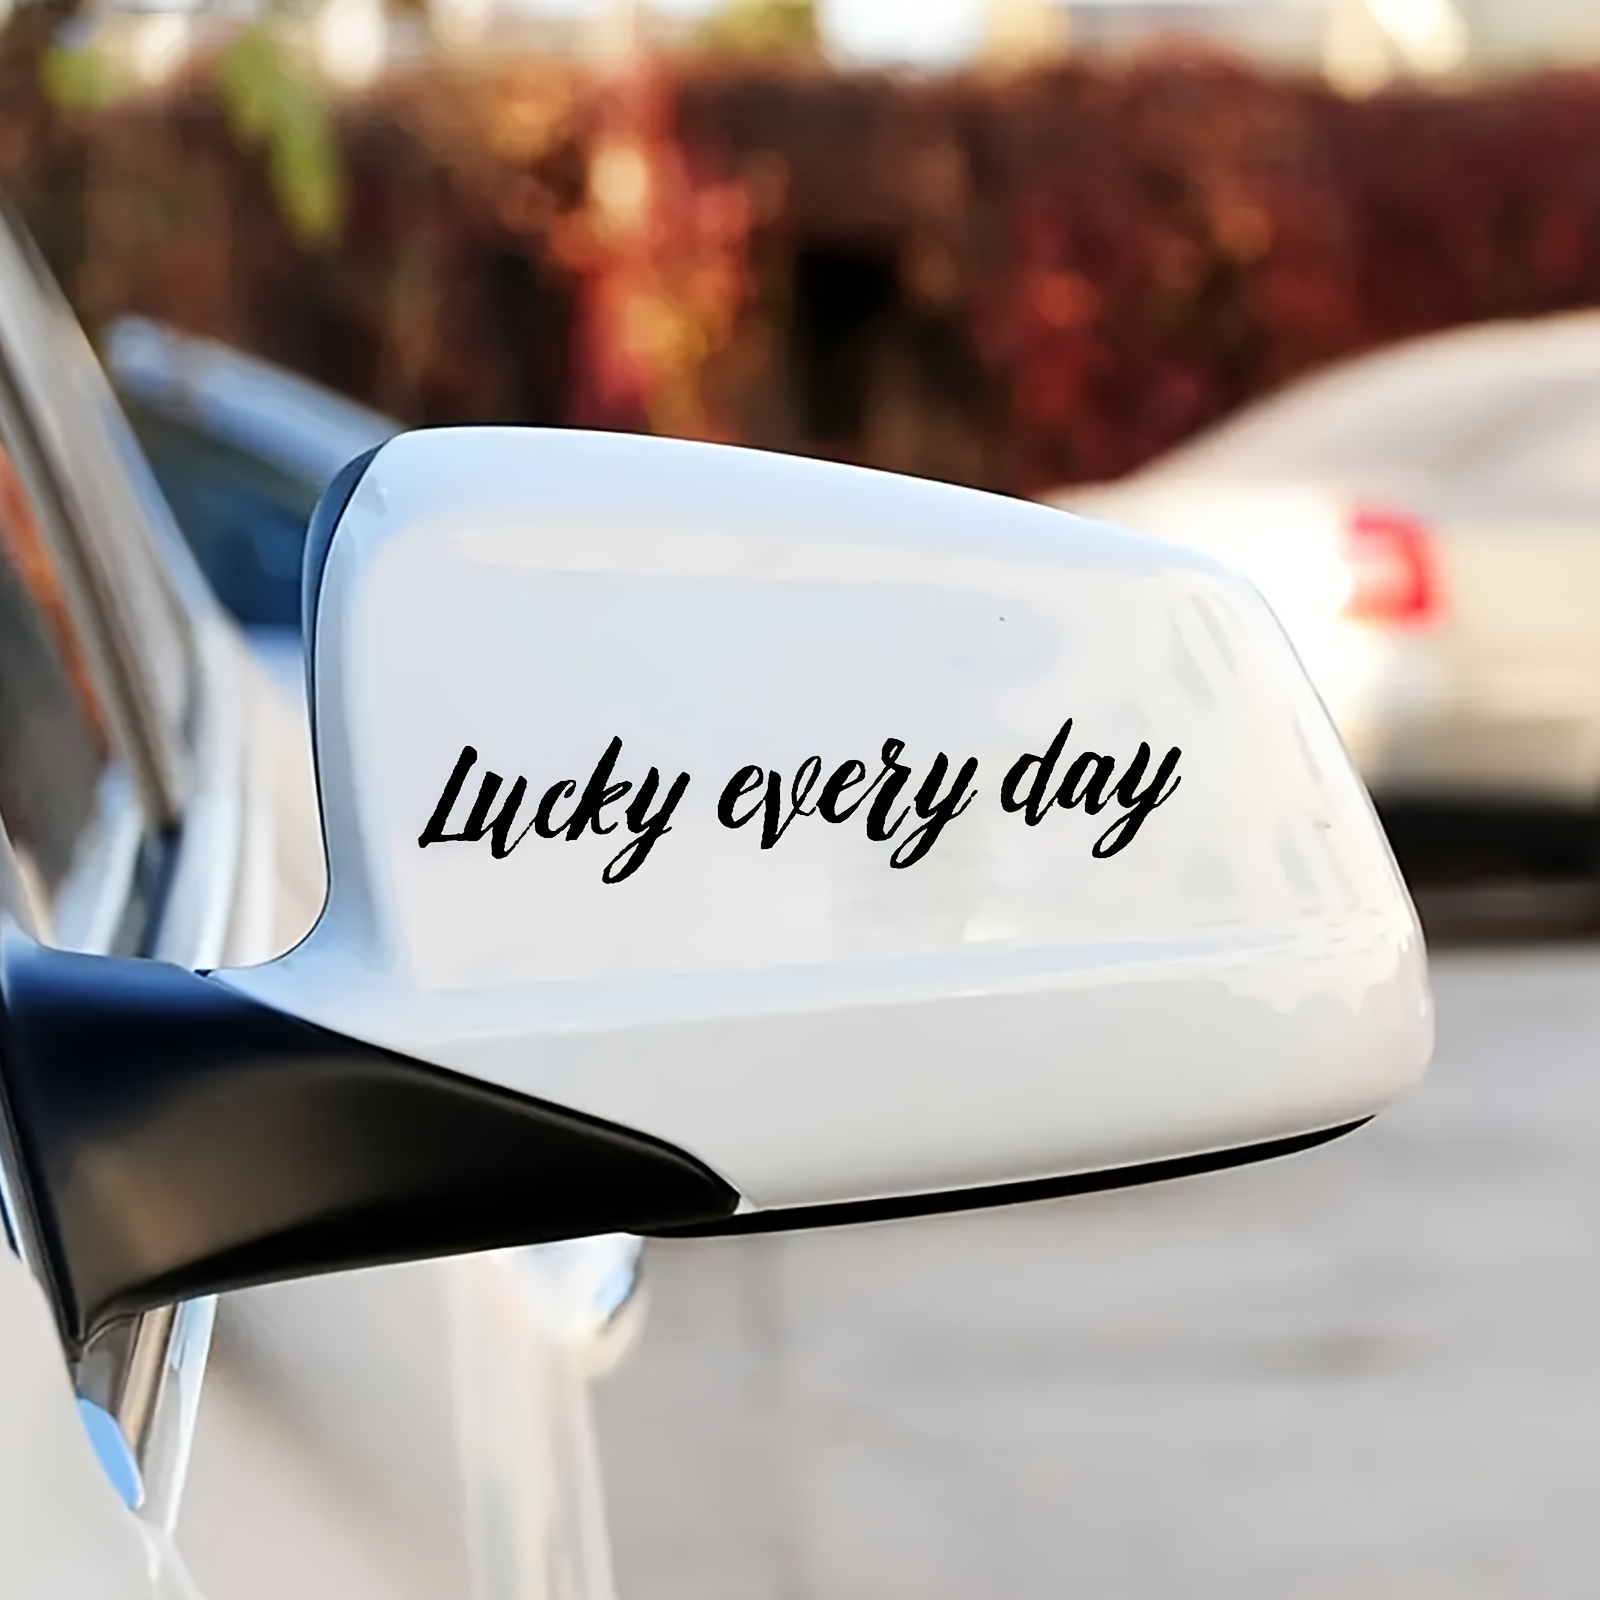 Auto spiegel aufkleber Lustiger Text aufkleber Auto motorrad